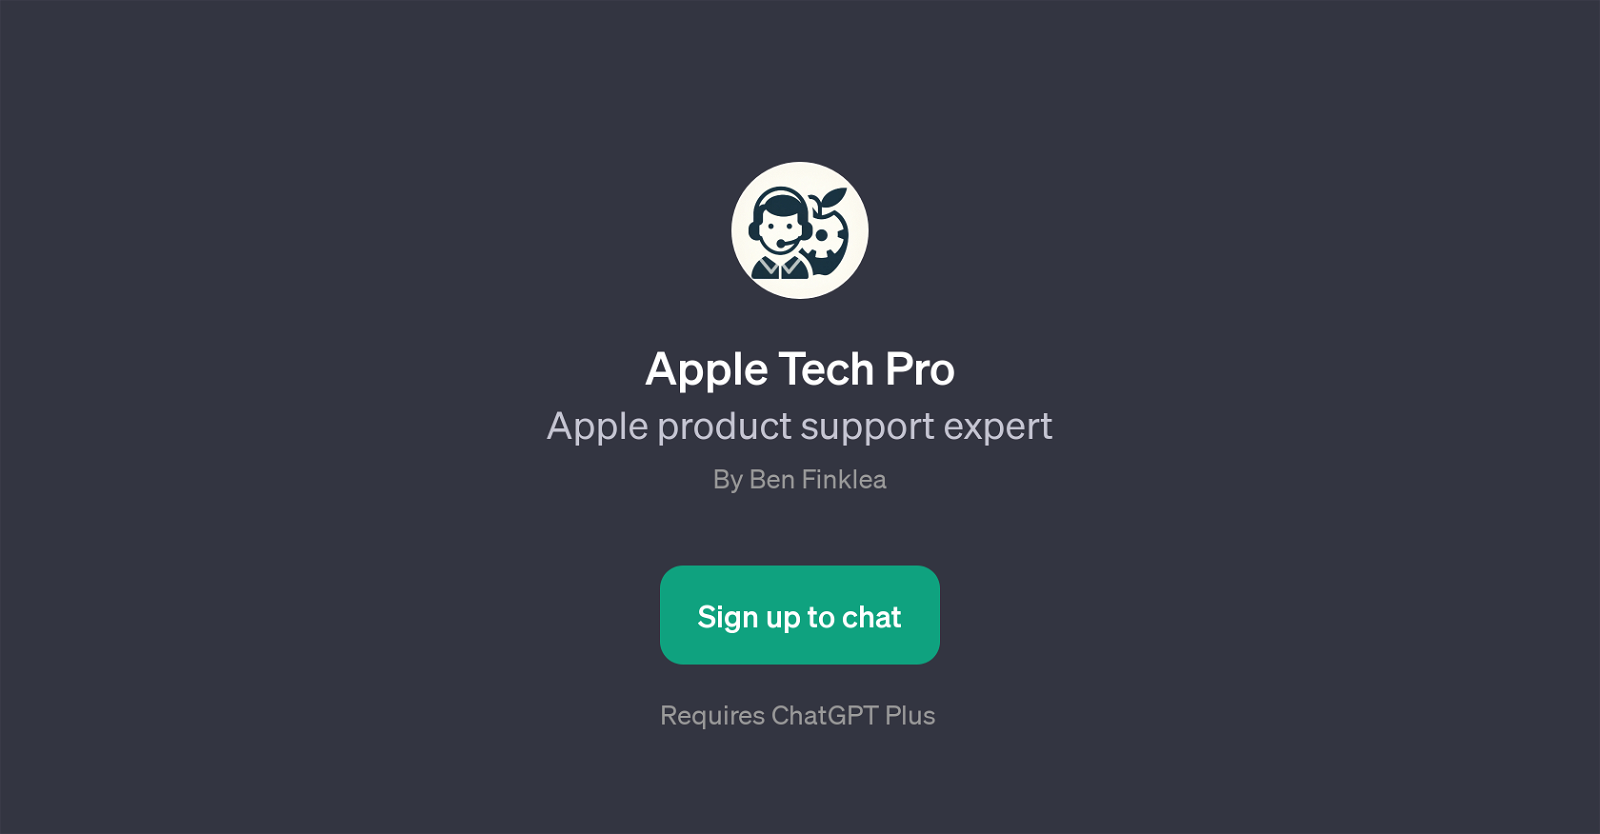 Apple Tech Pro website